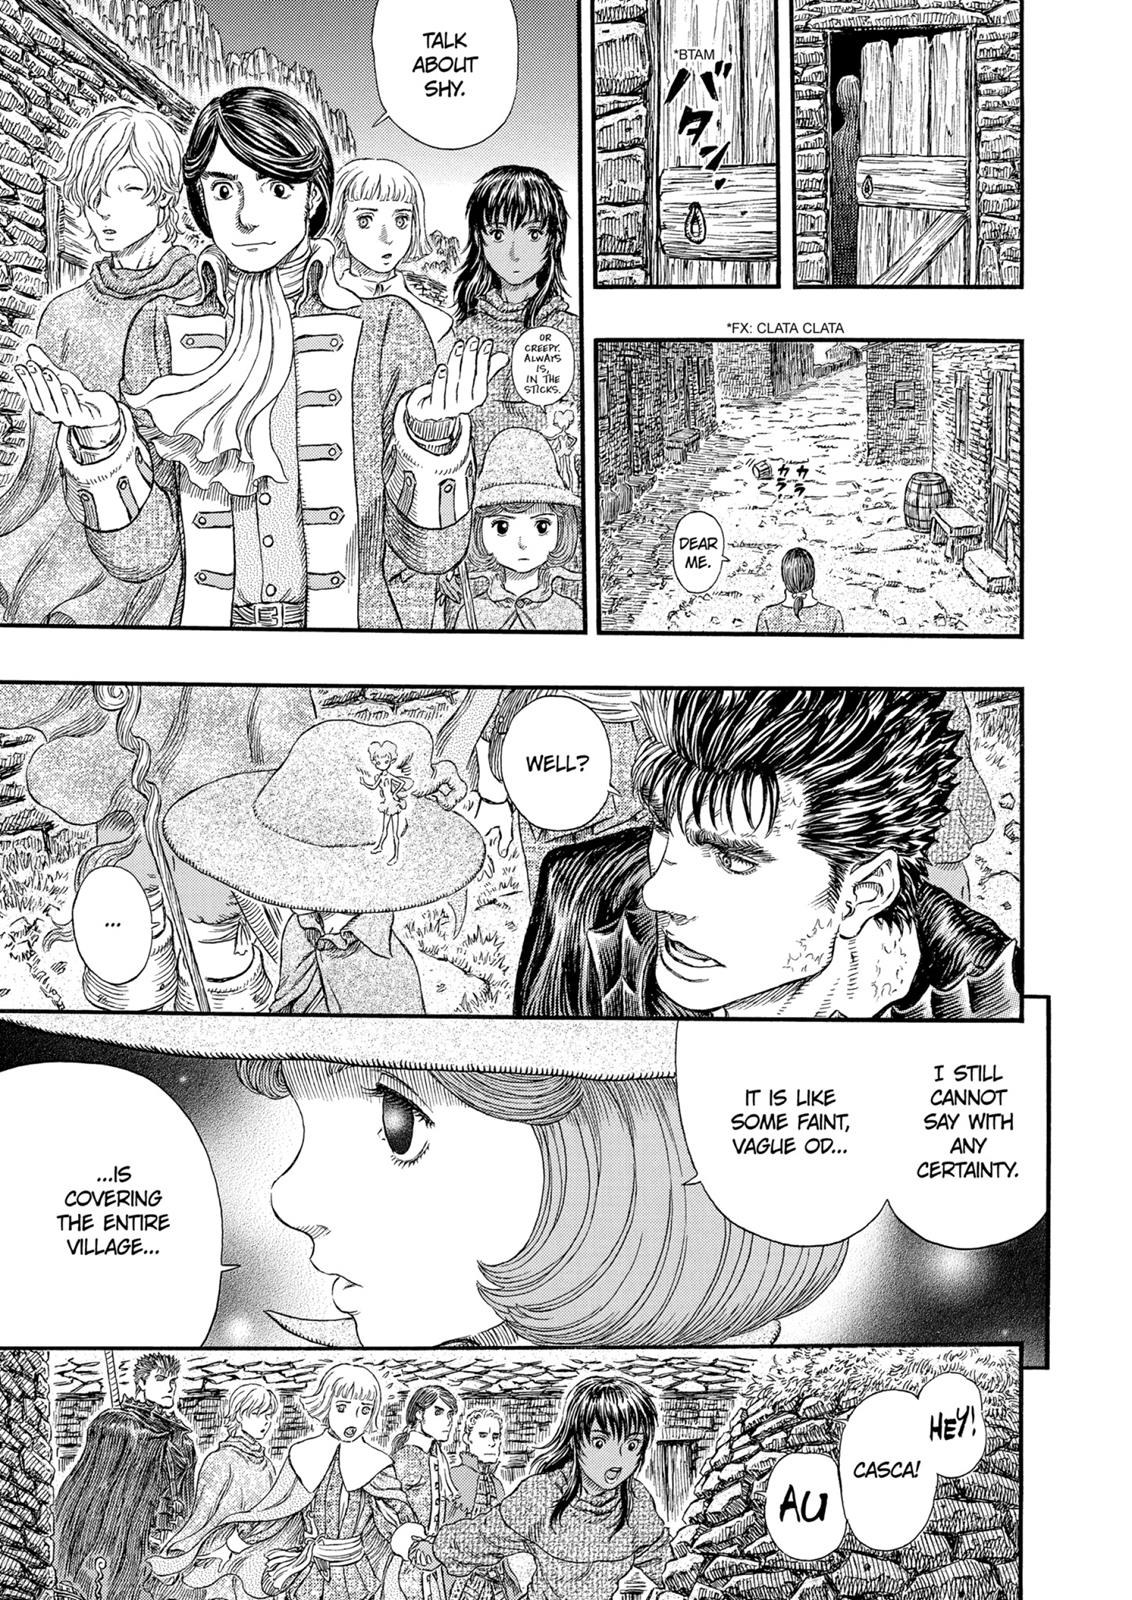 Berserk Manga Chapter 311 image 20